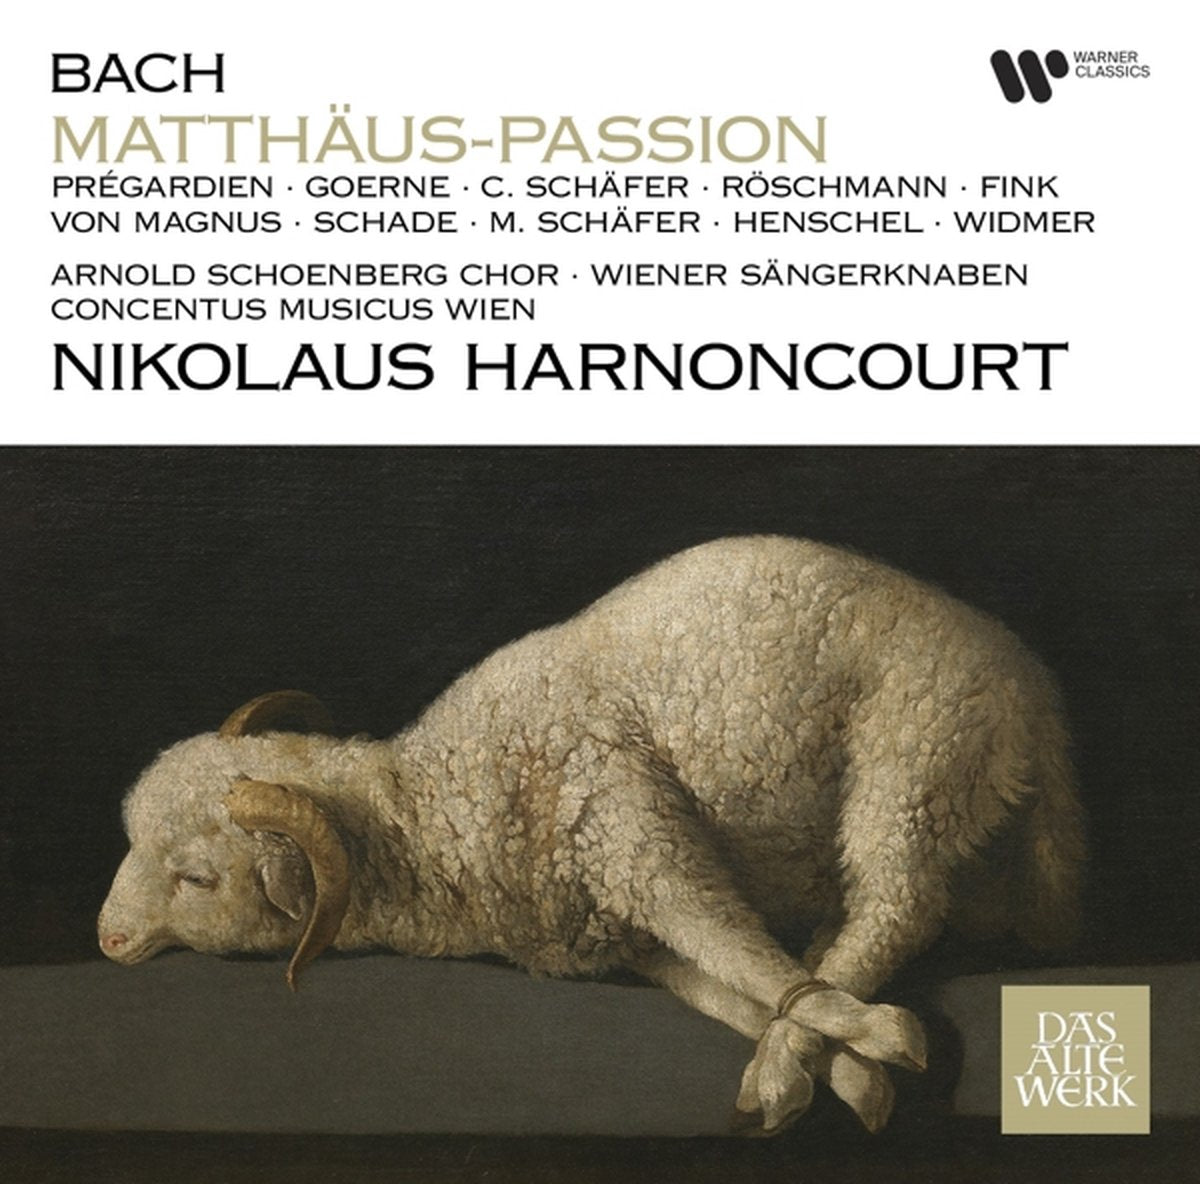 Nikolaus Harnoncourt - Bach Matthaus-Passion (3 LPs)